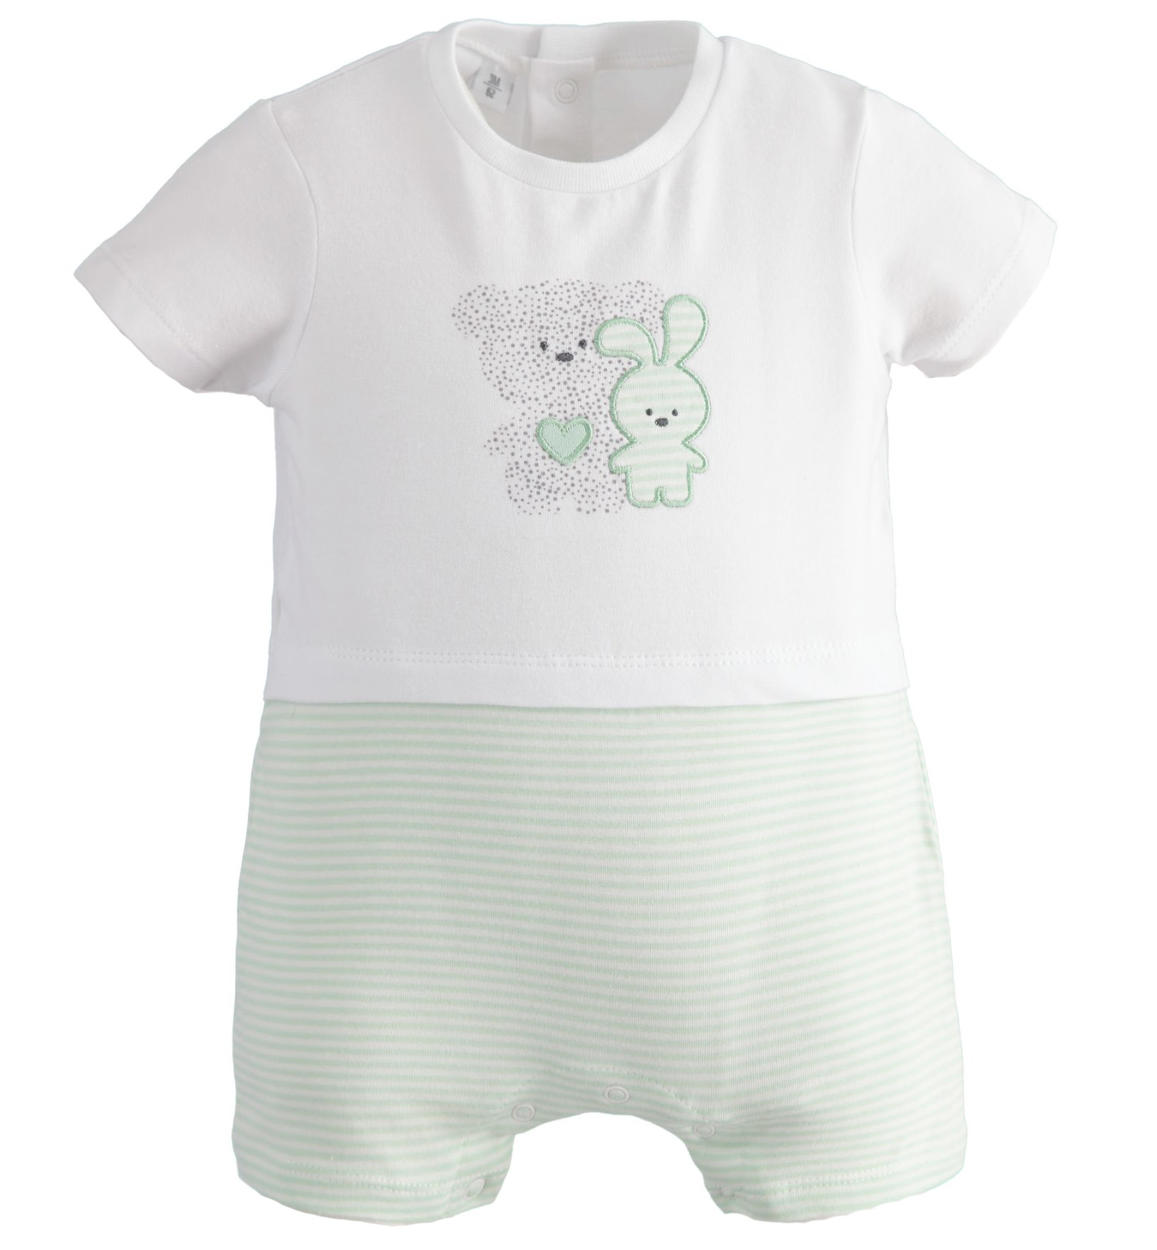 Pagliaccetto neonato estivo con orsetto e coniglietto da 0 a 18 mesi iDO -  Miniconf Shop